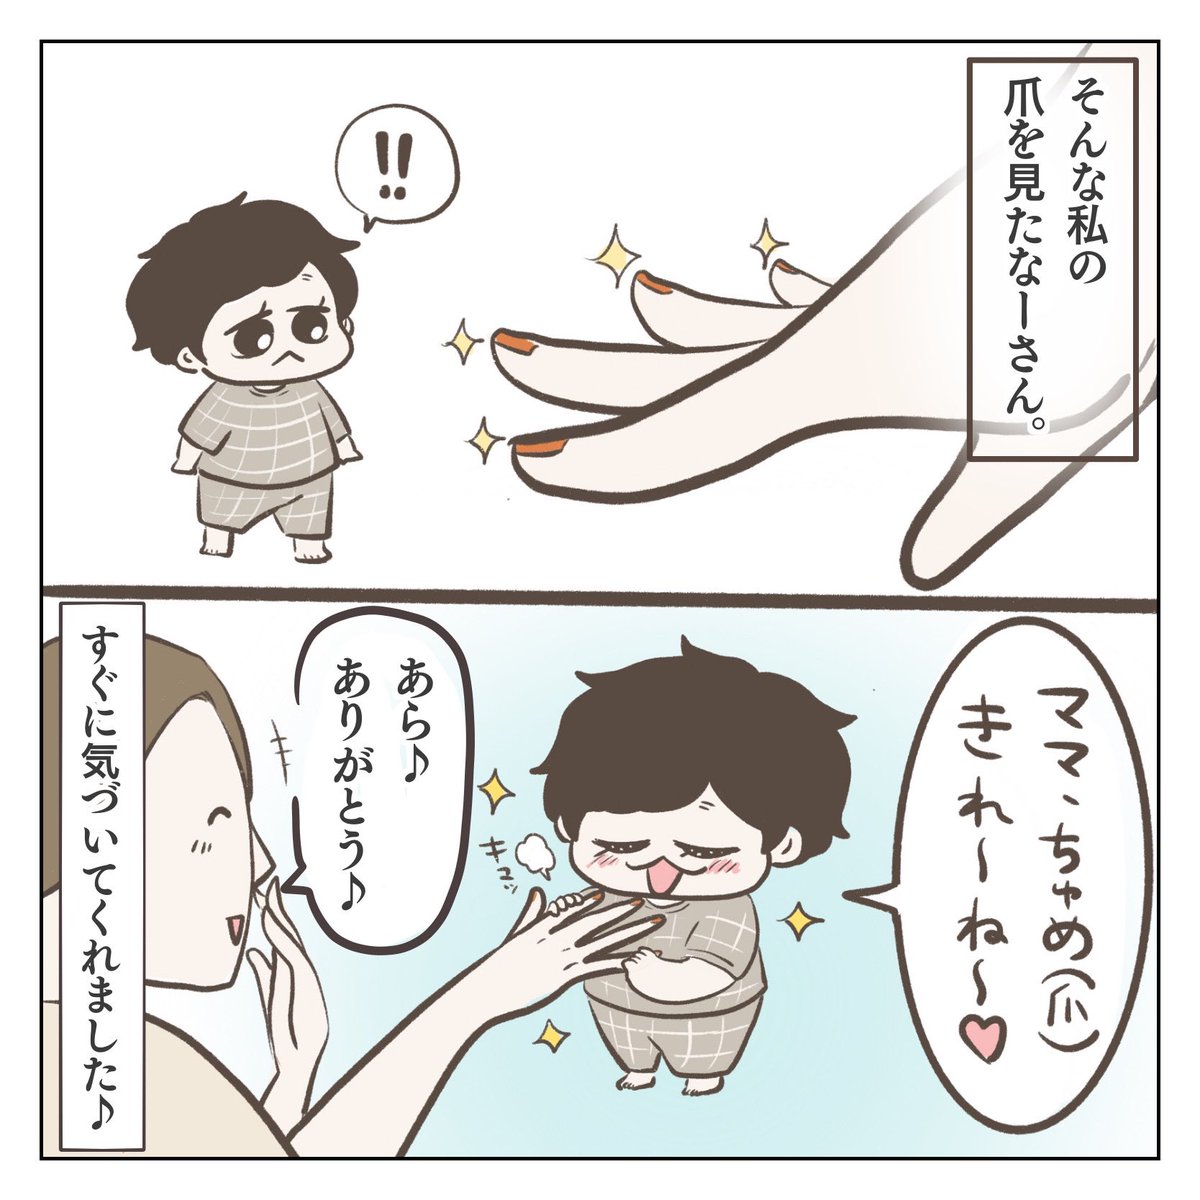 ママのちゅめ(1/3) #育児漫画 #3歳 #過去作